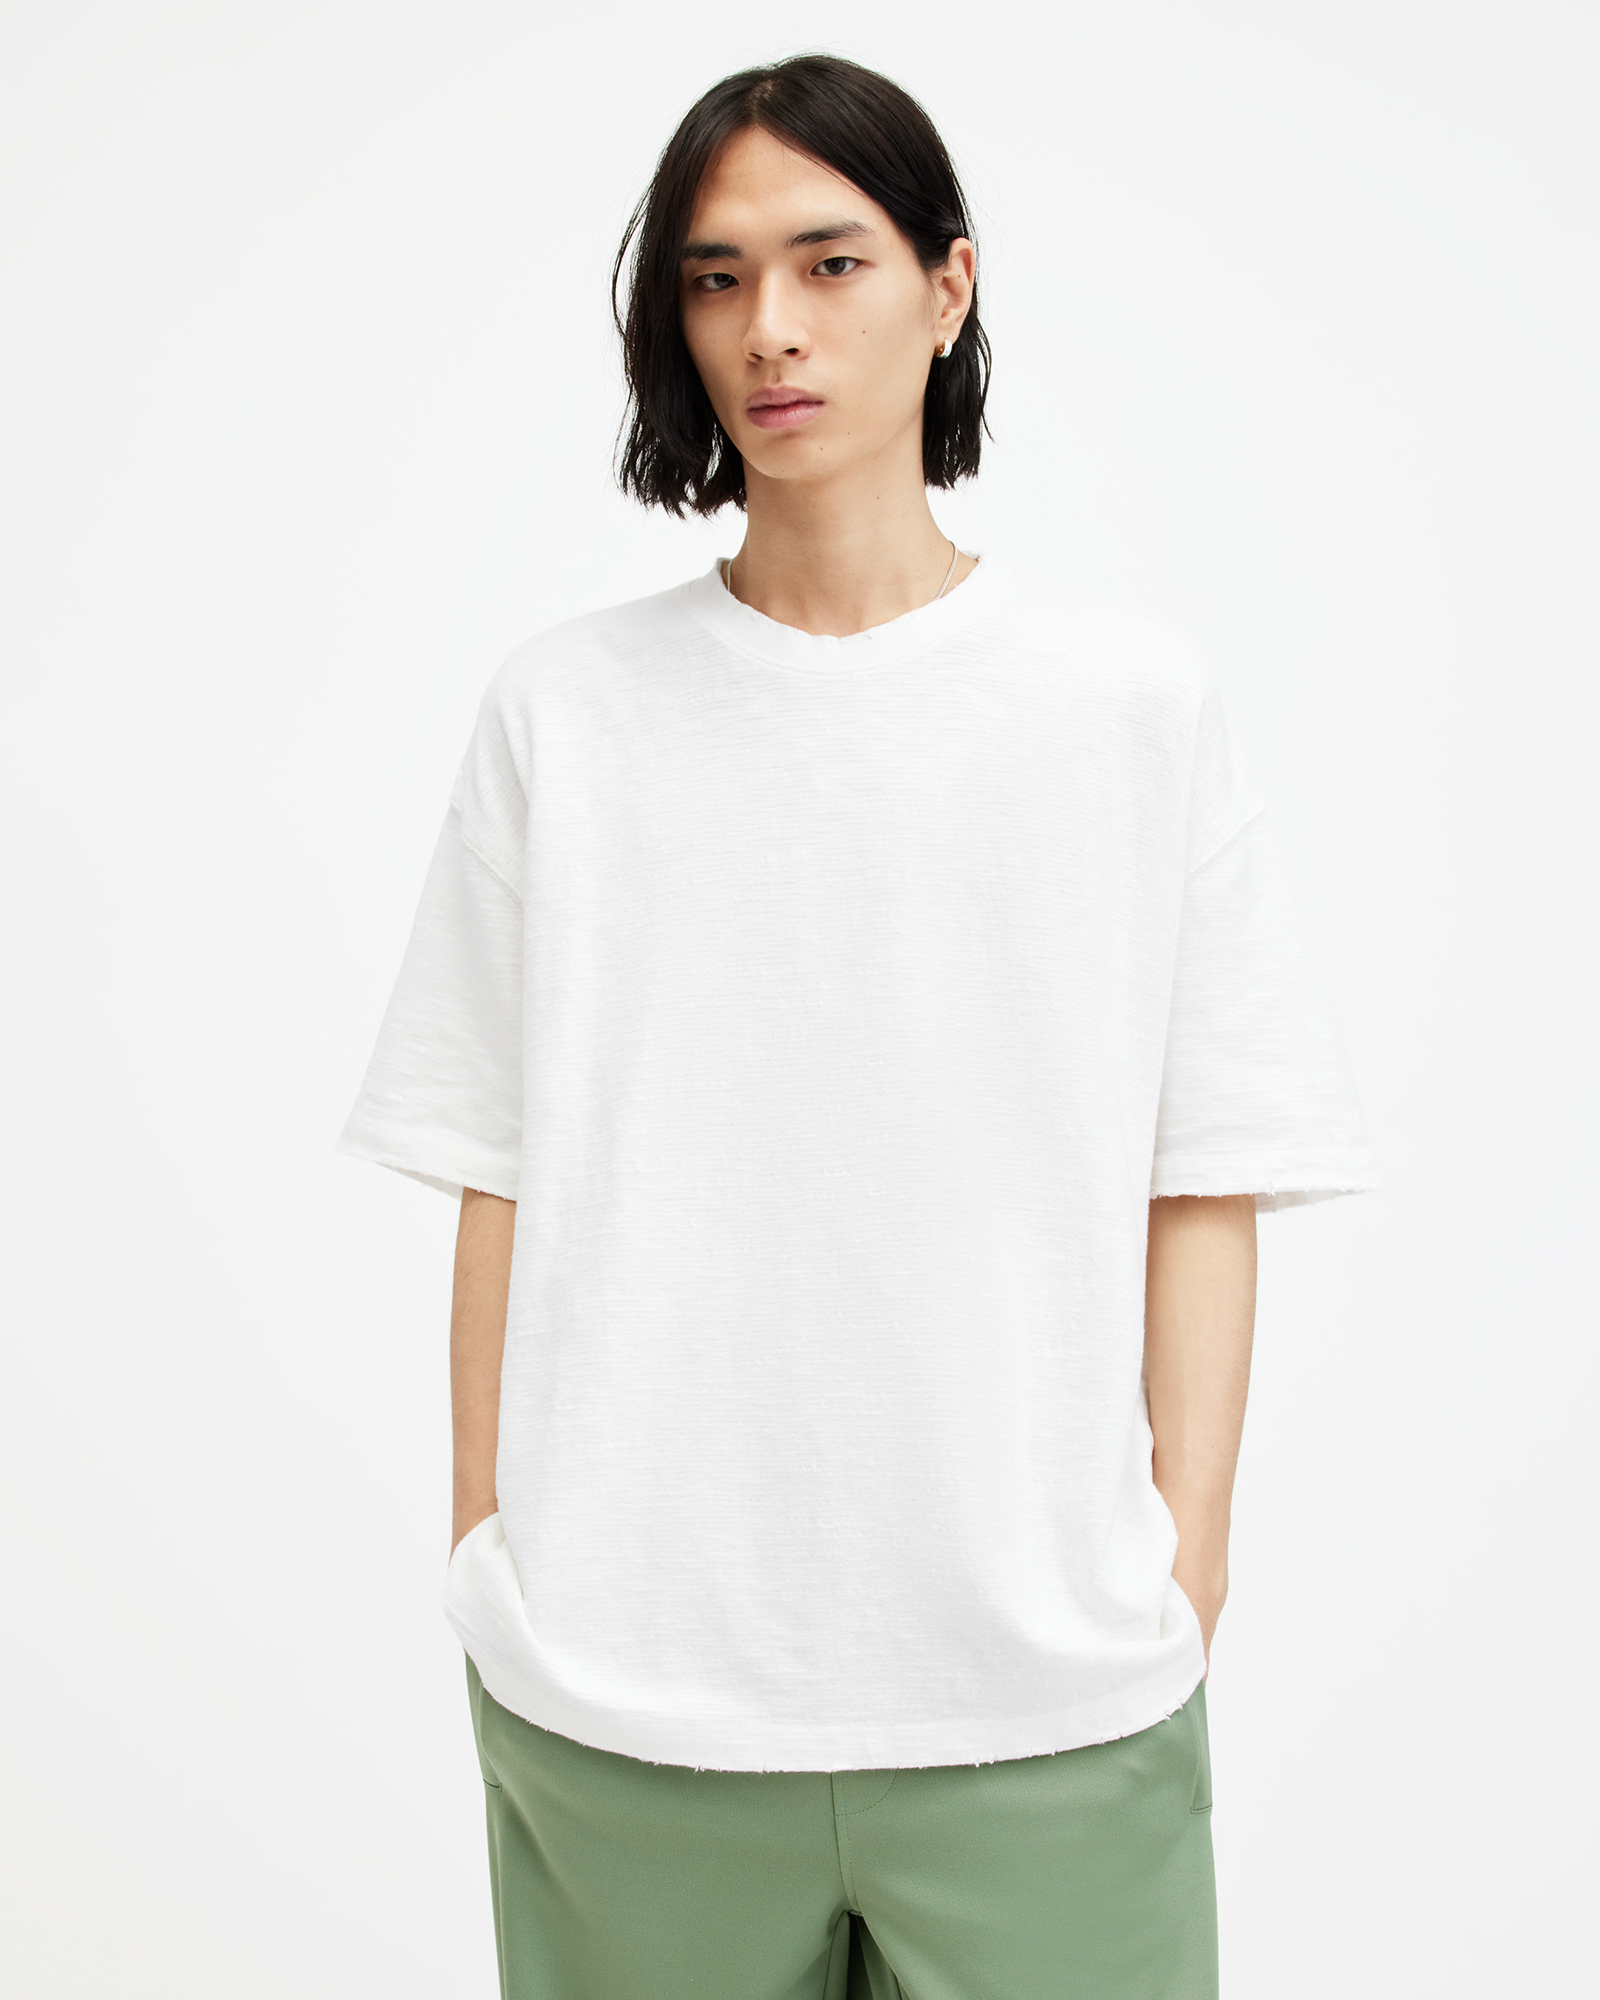 AllSaints Aspen Oversized Short Sleeve T-Shirt,, LILLY WHITE